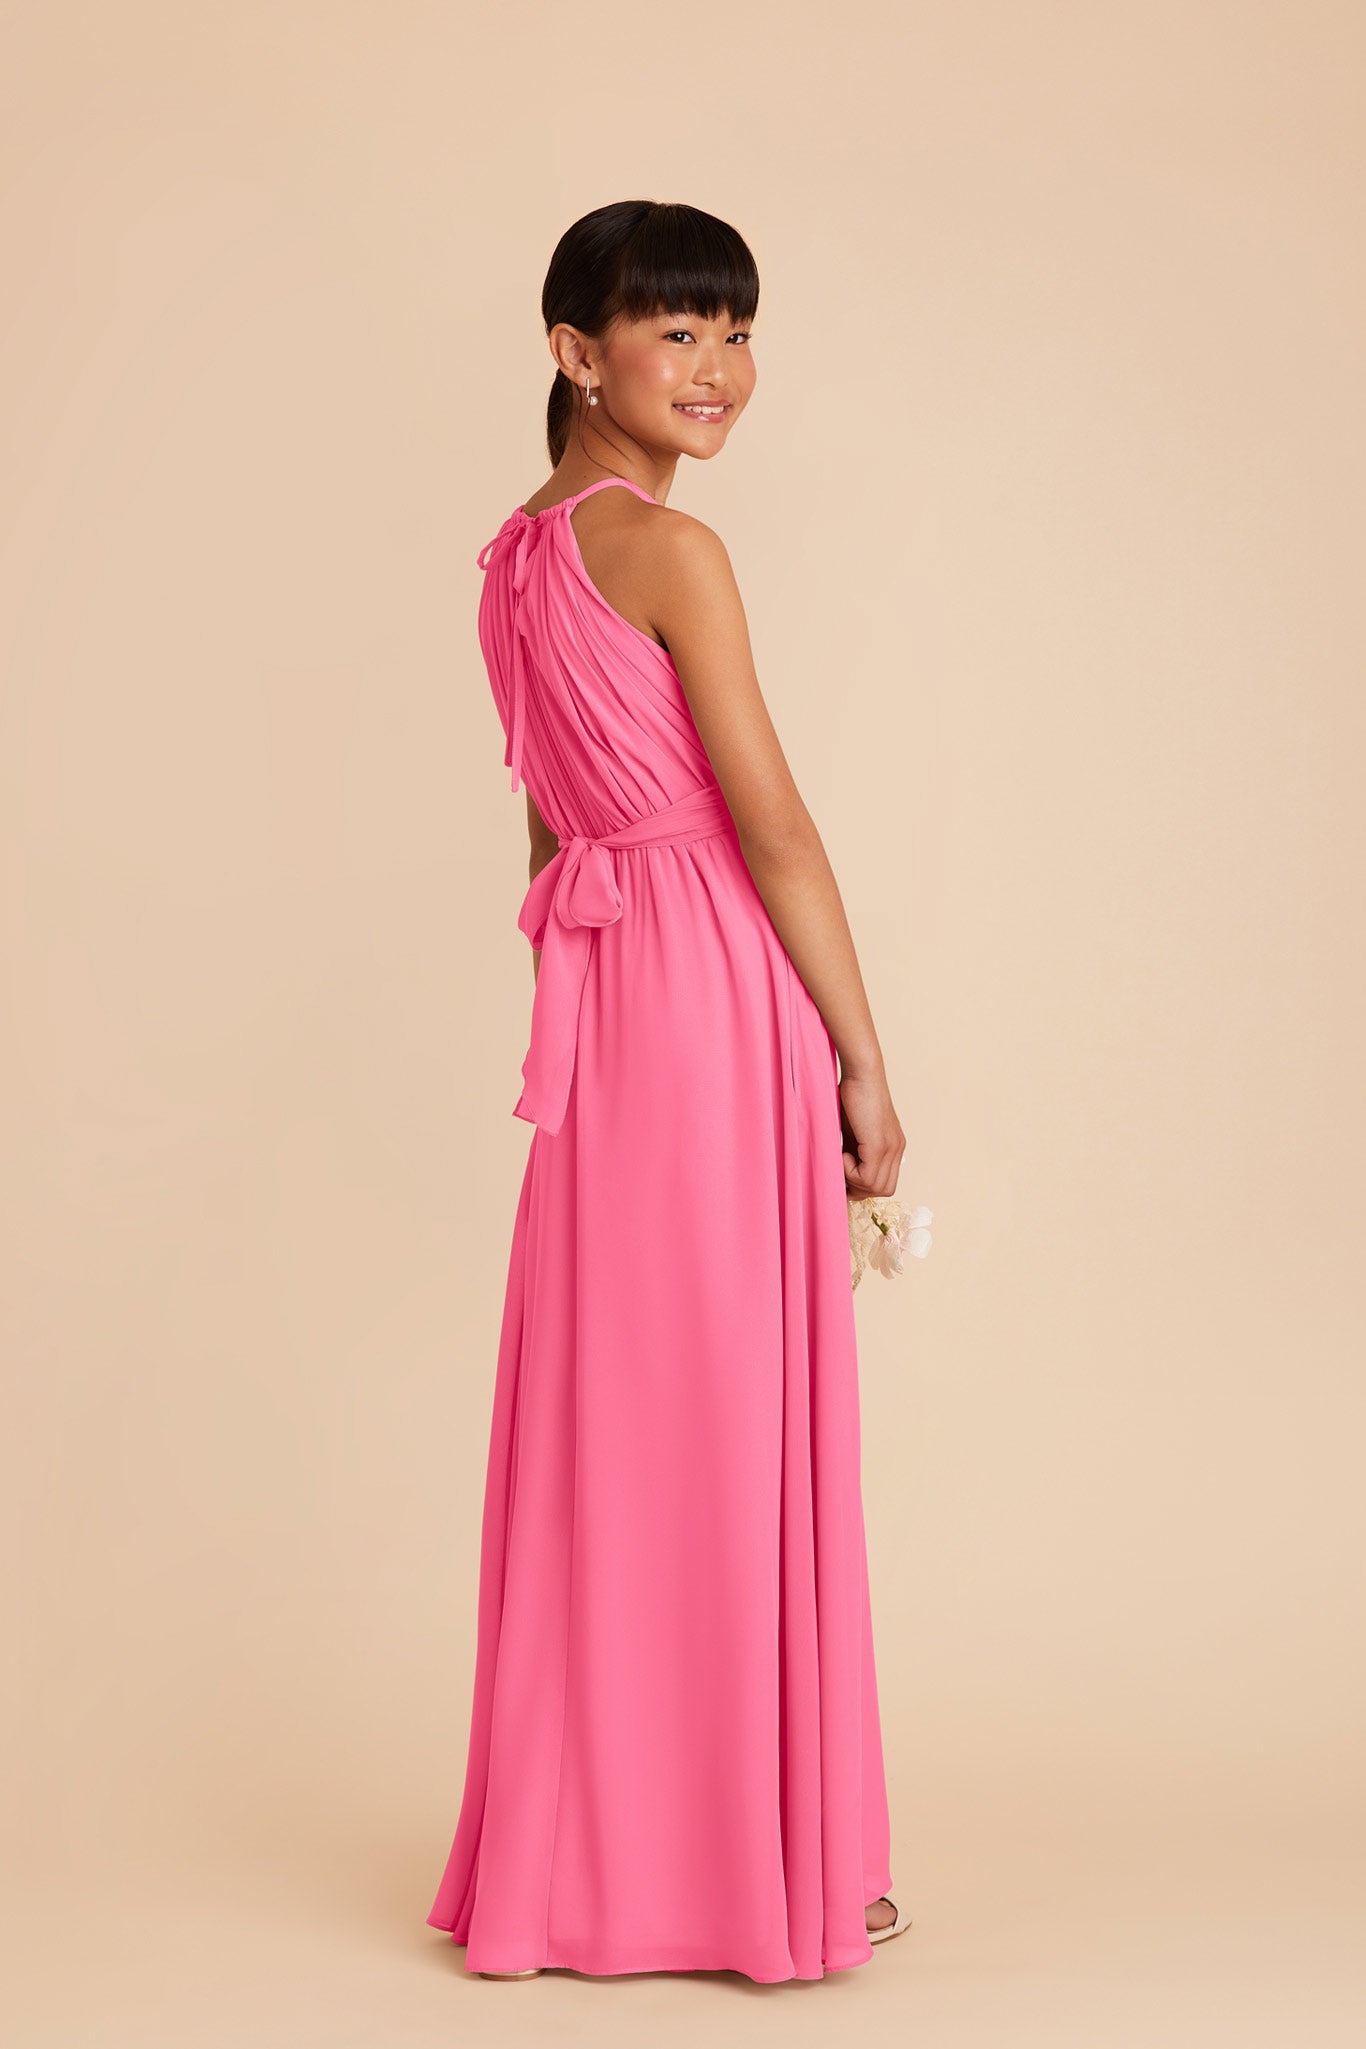 Bon Bon Pink Sienna Junior Chiffon Dress by Birdy Grey